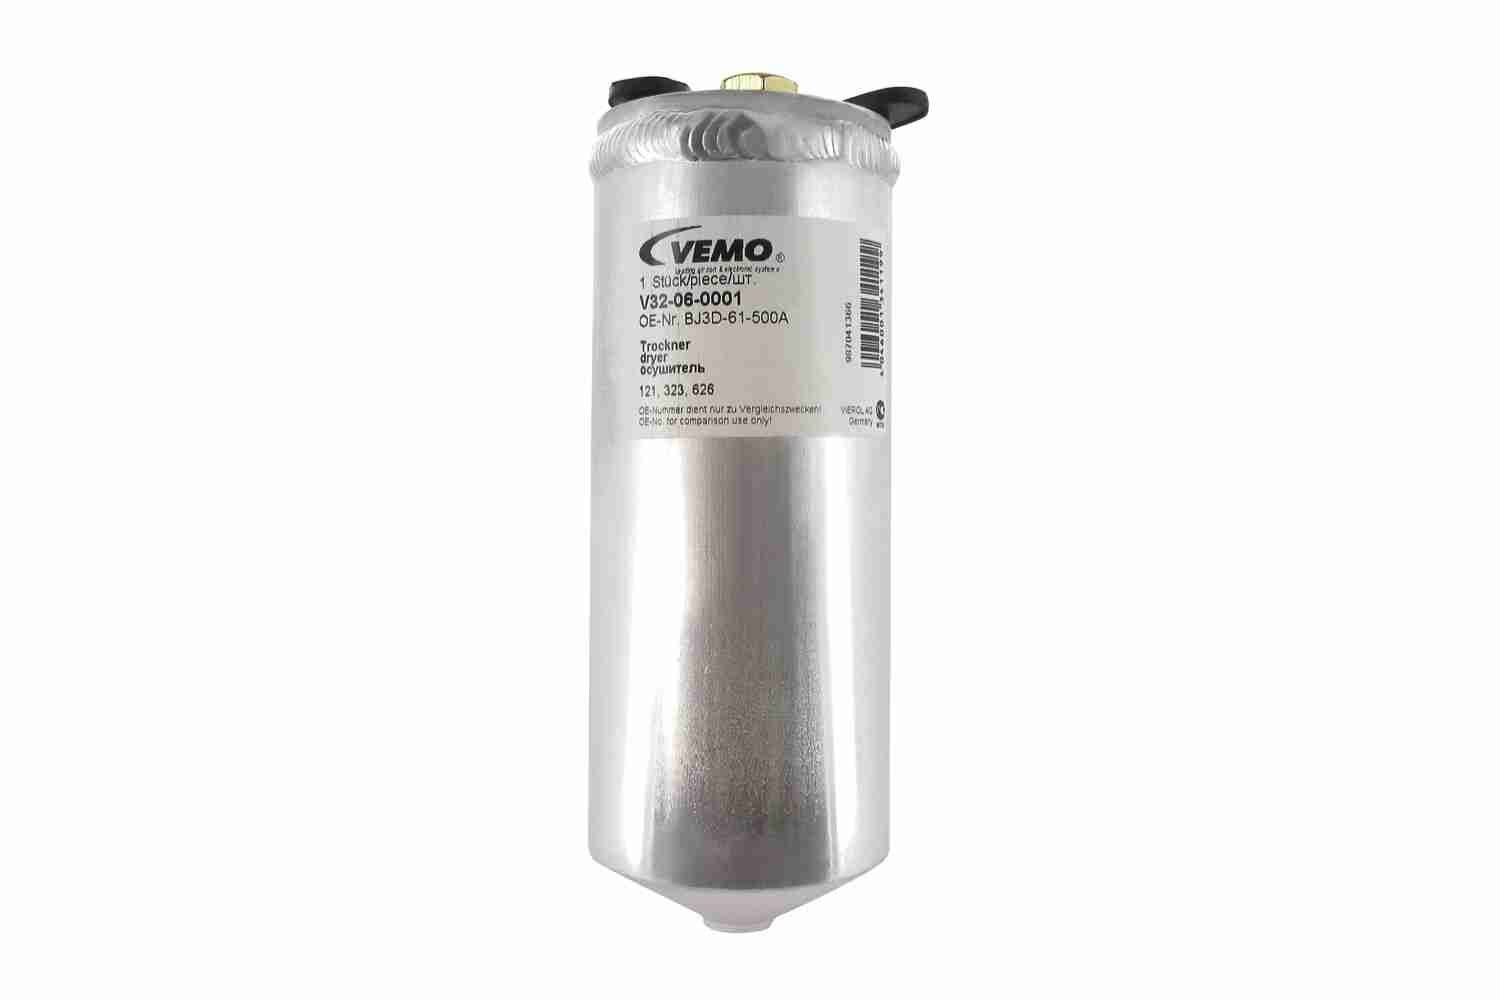 VEMO Original Quality Aluminium Receiver drier V32-06-0001 buy